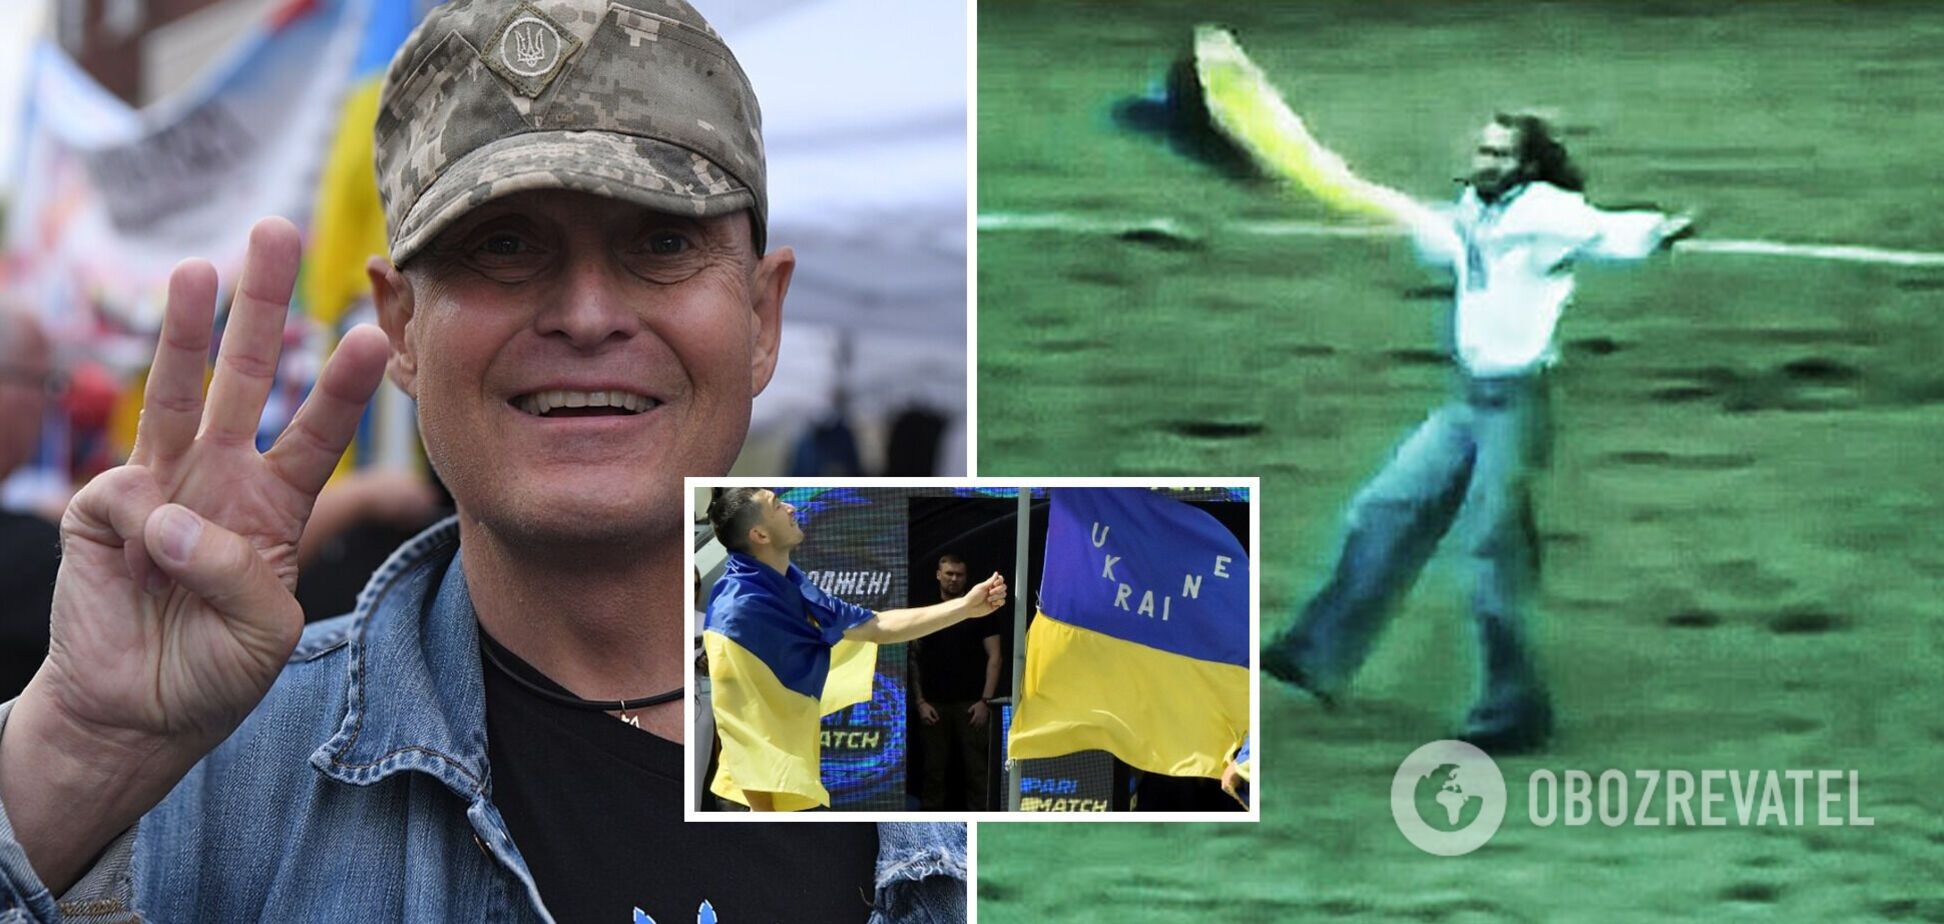 Танцевал с флагом Украины перед игроками СССР: уникальная акция протеста на Олимпиаде в Канаде